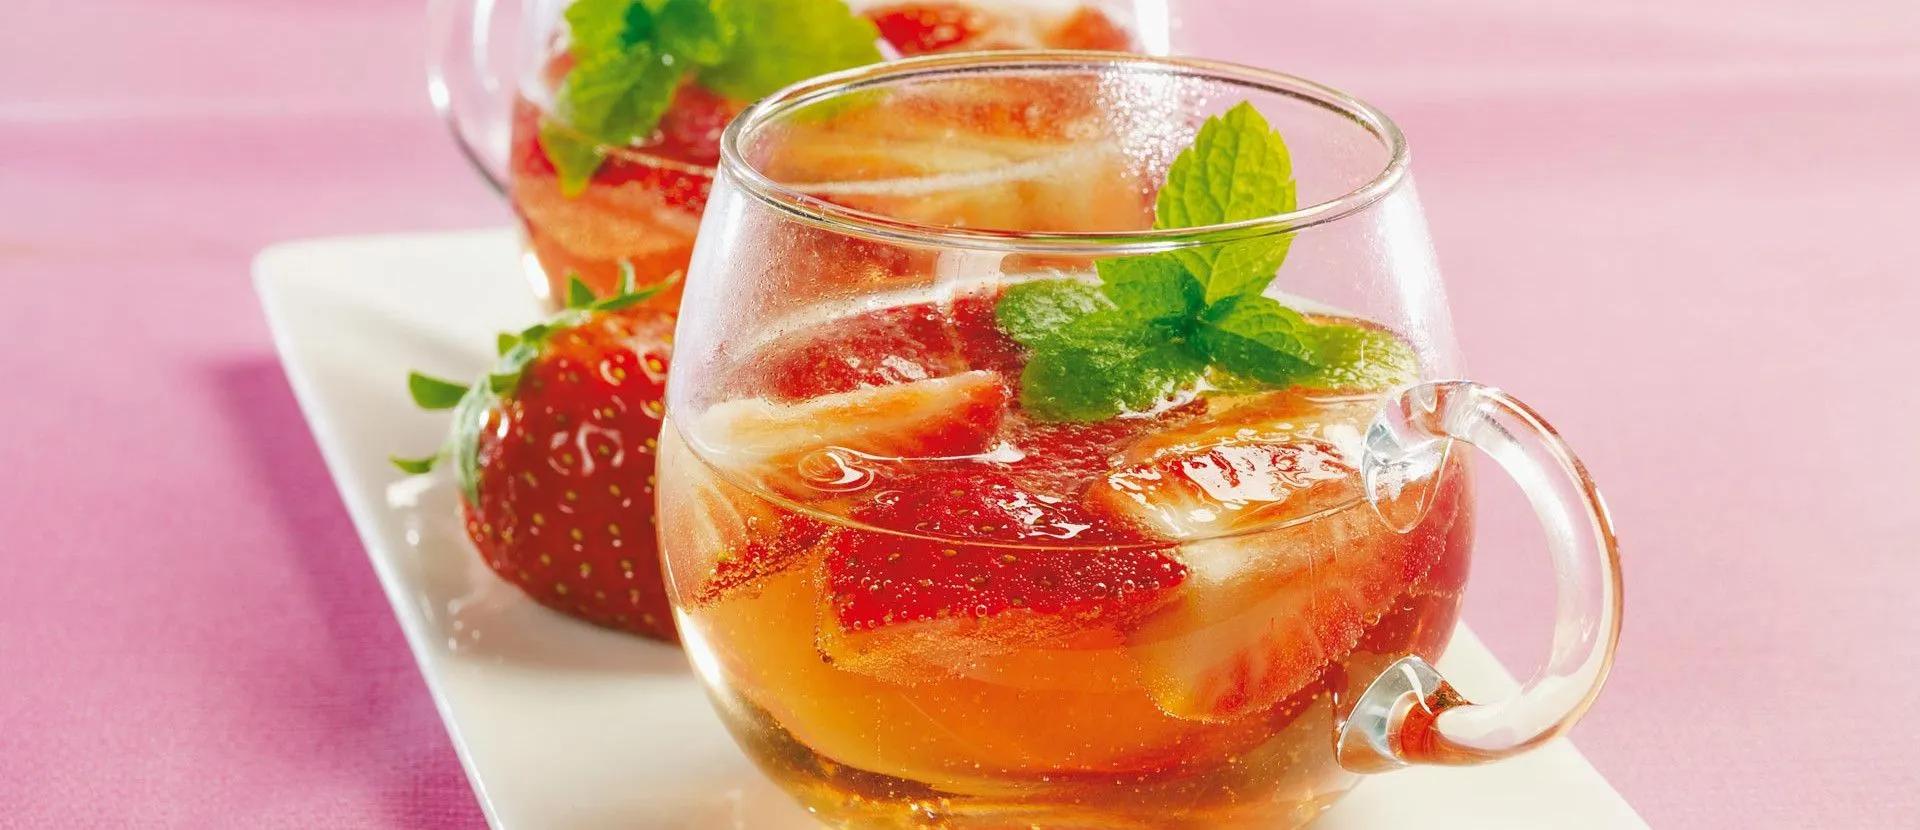 Erdbeer-Holunderblüten-Bowle Rezept | tegut... Ginger Ale, Kraut ...